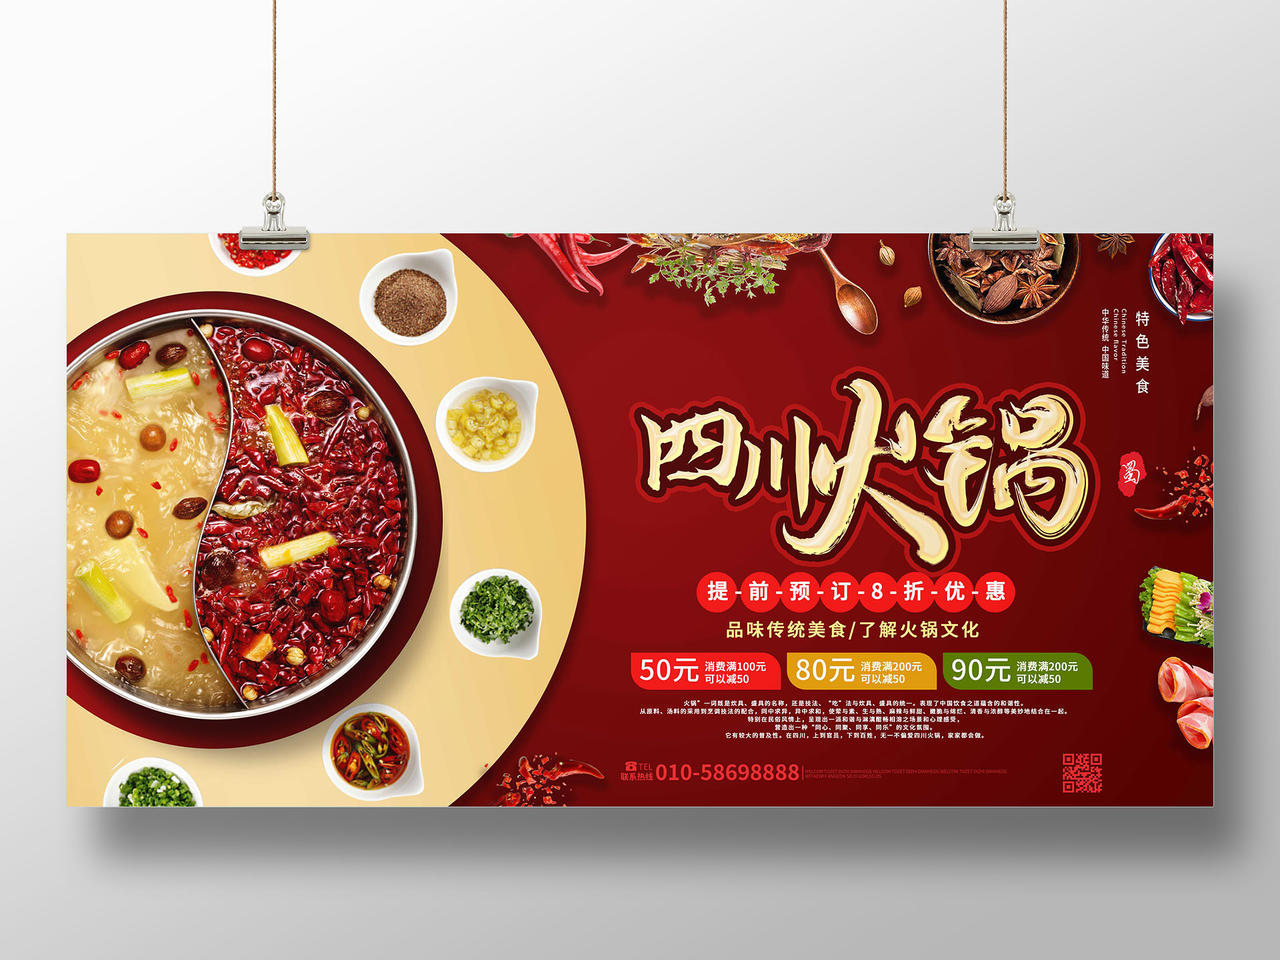 红色背景大气创意四川火锅美食促销宣传展板设计四川火锅老火锅